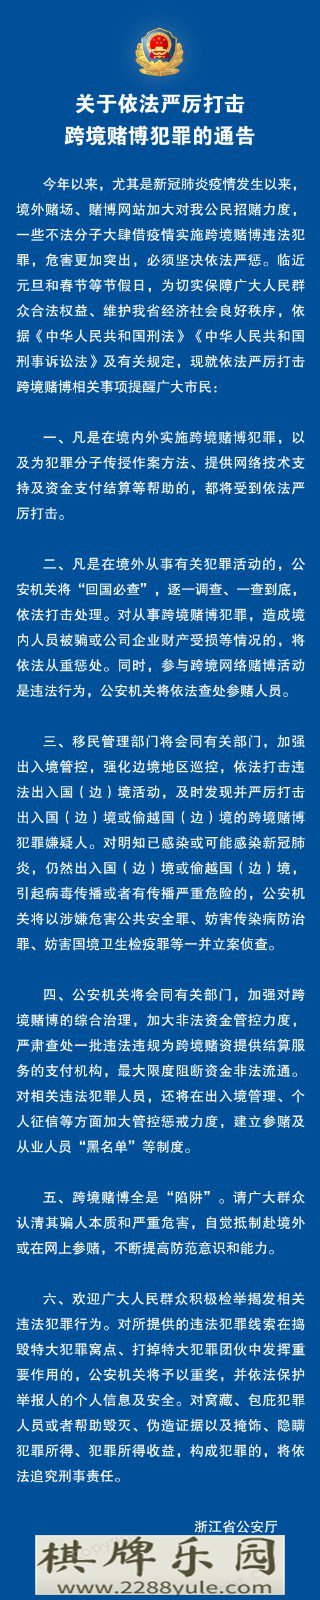 浙江公安公布5起典型打击跨境赌博犯罪案例